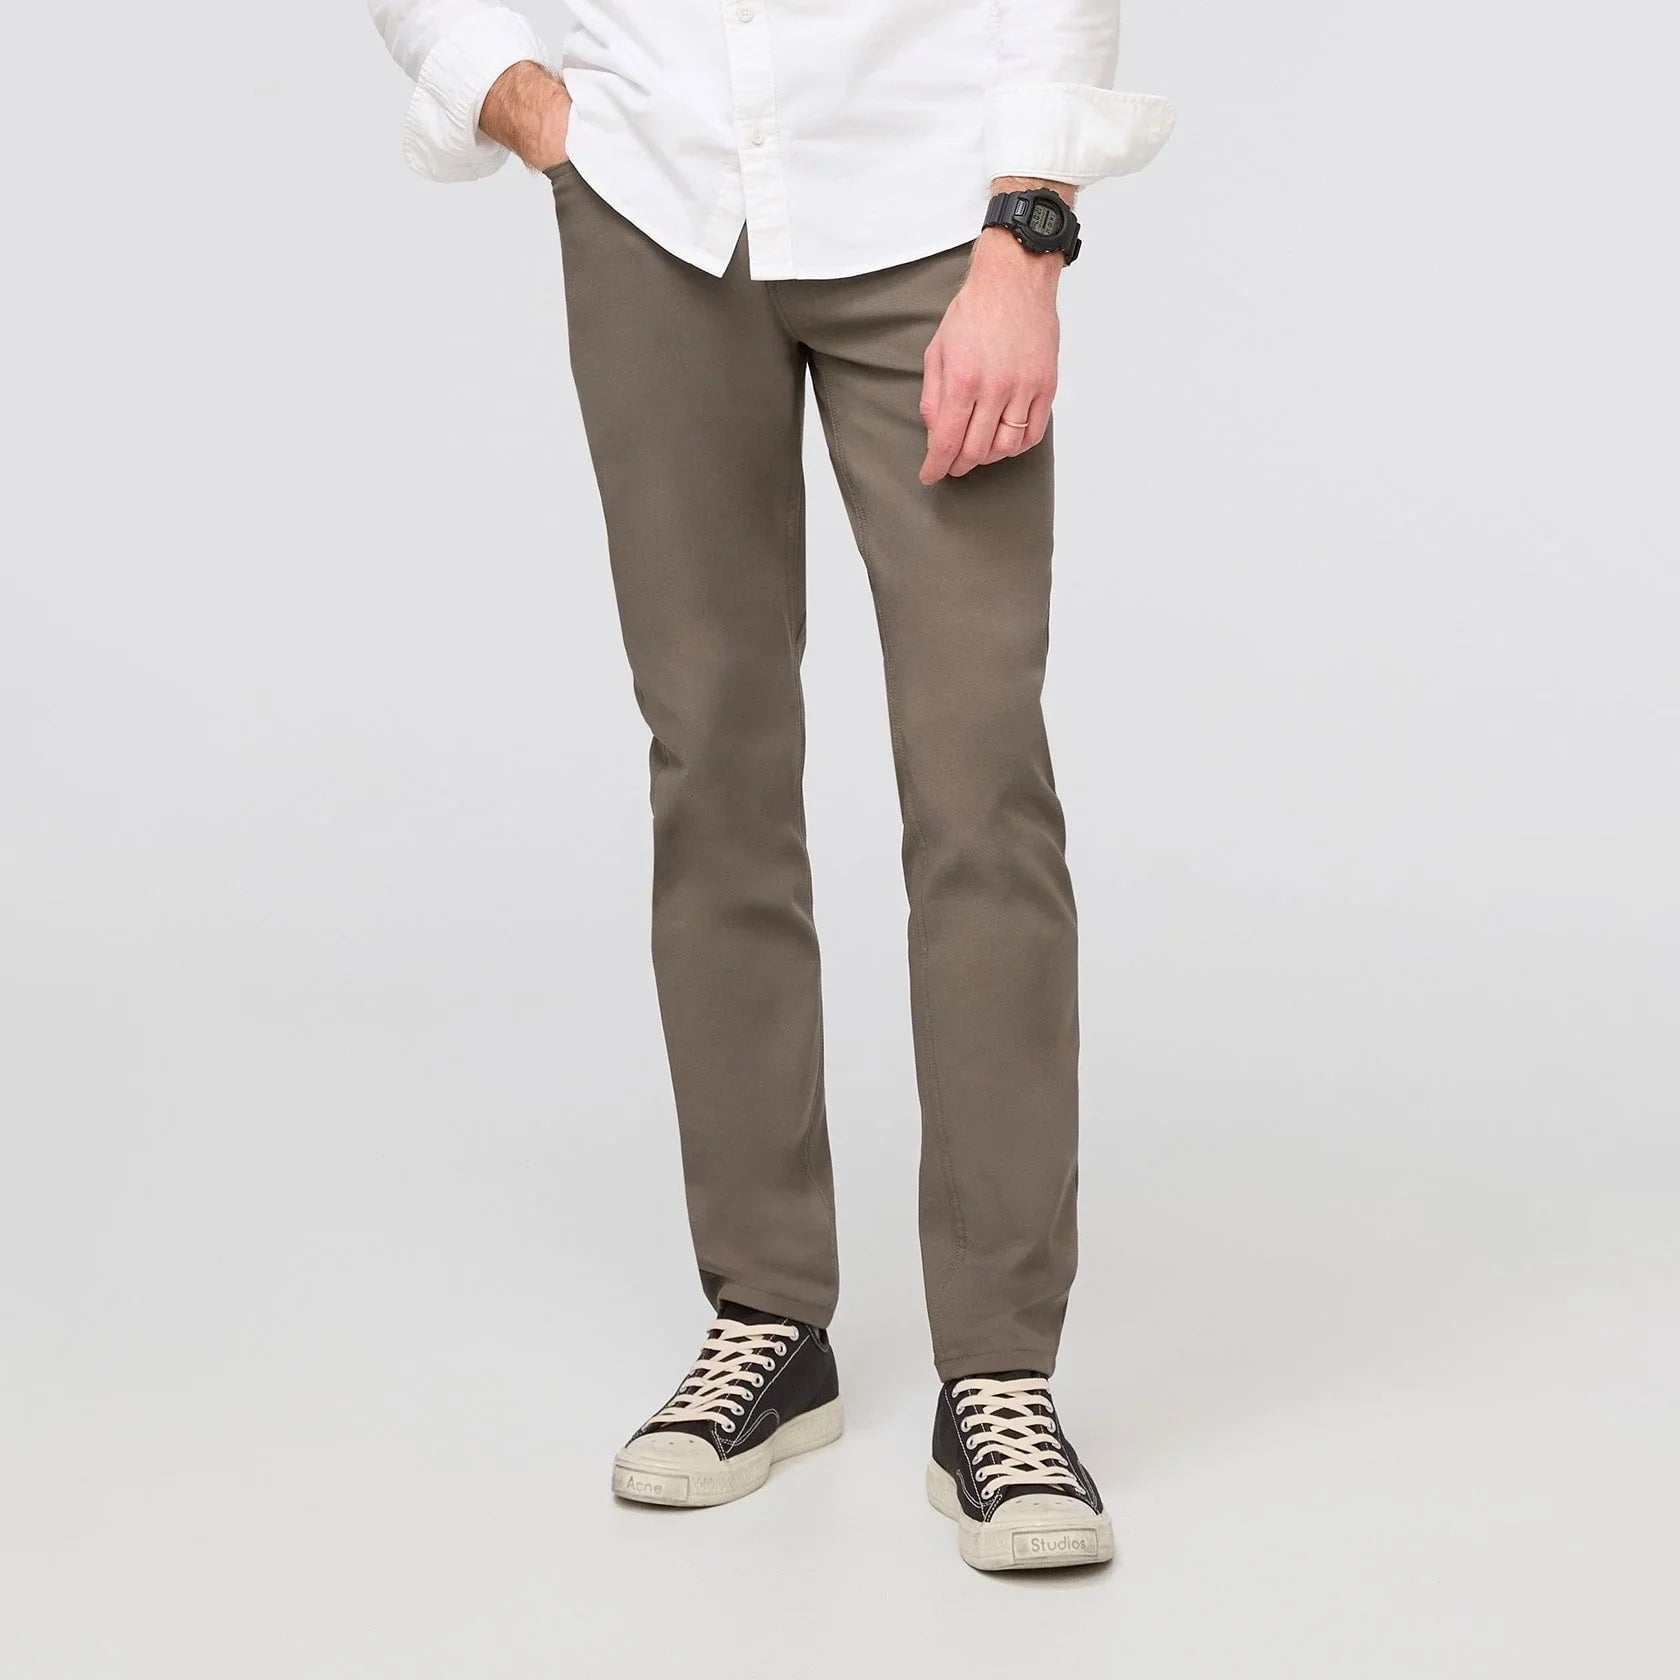 'Du/er NuStretch 5 Pocket Pant Slim' in 'Thyme' colour